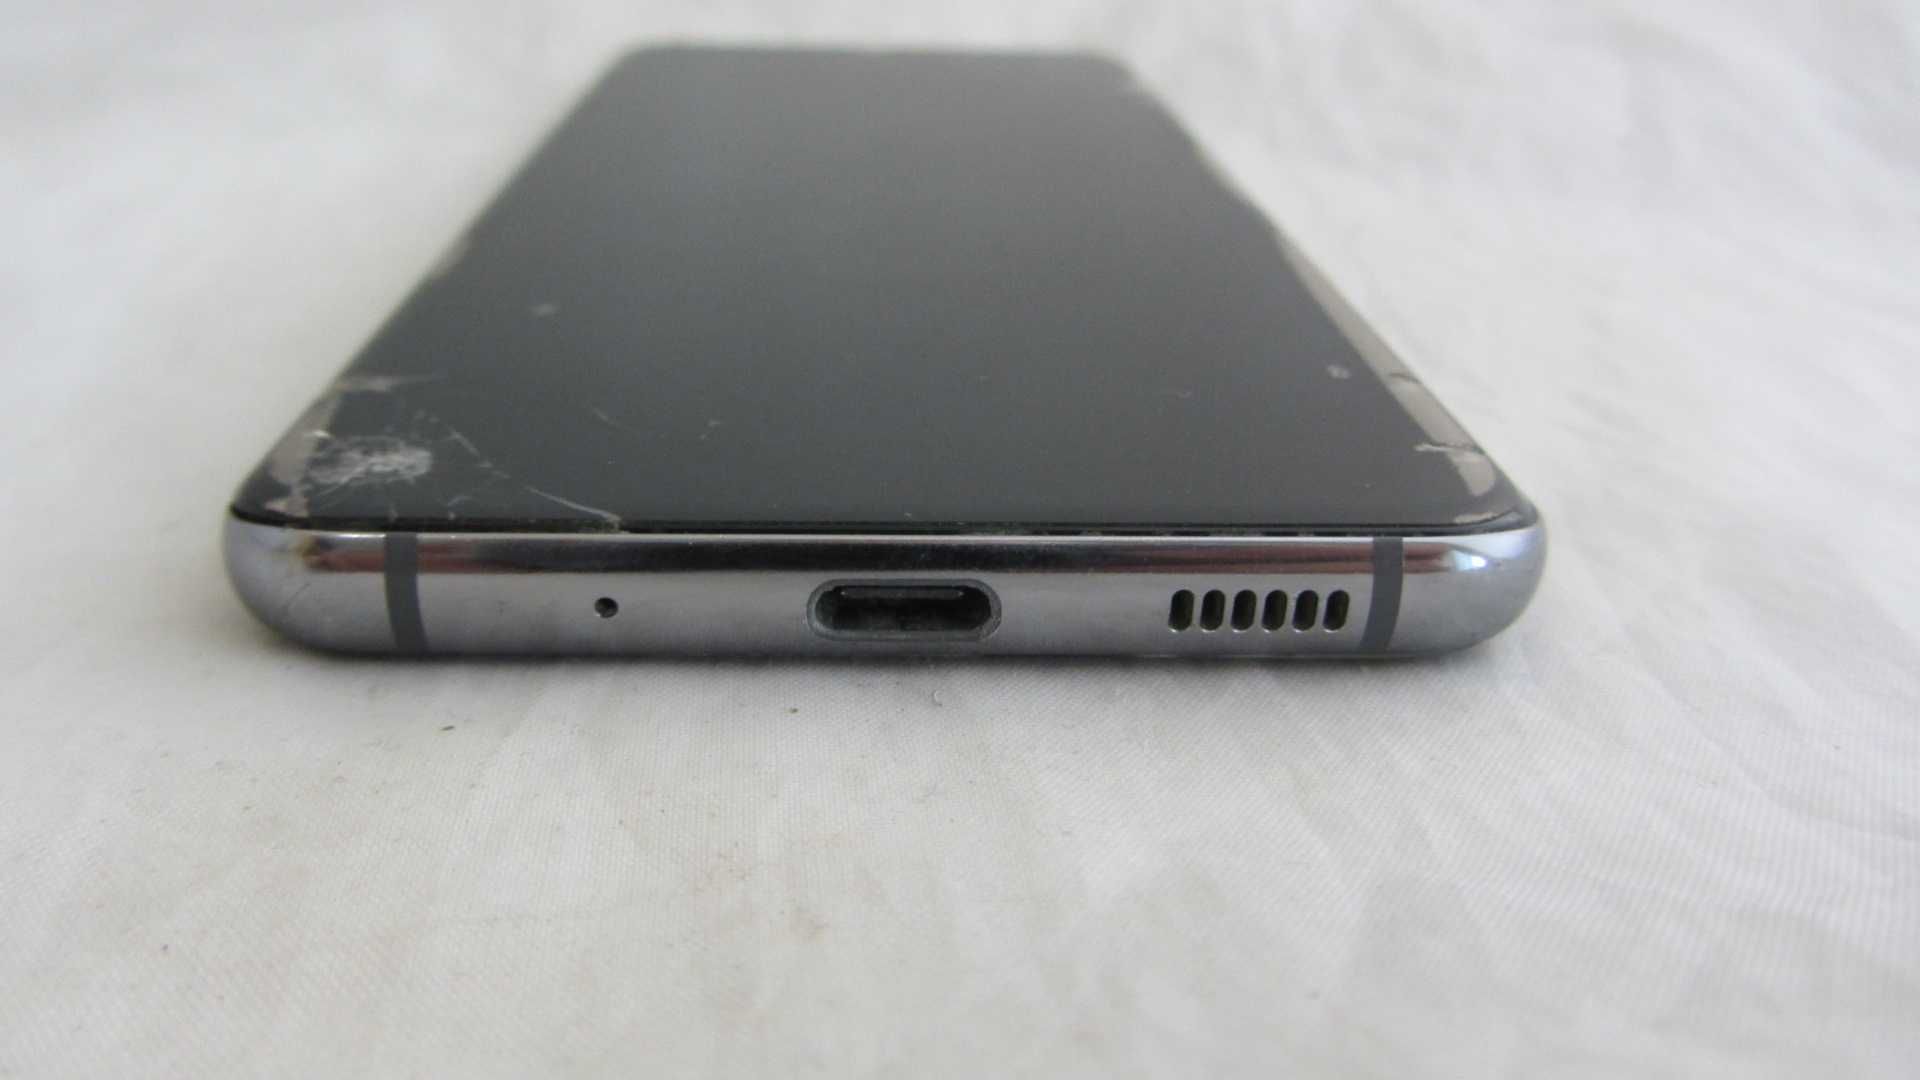 Samsung Galaxy S20 (SM-G980FZAD) Gray